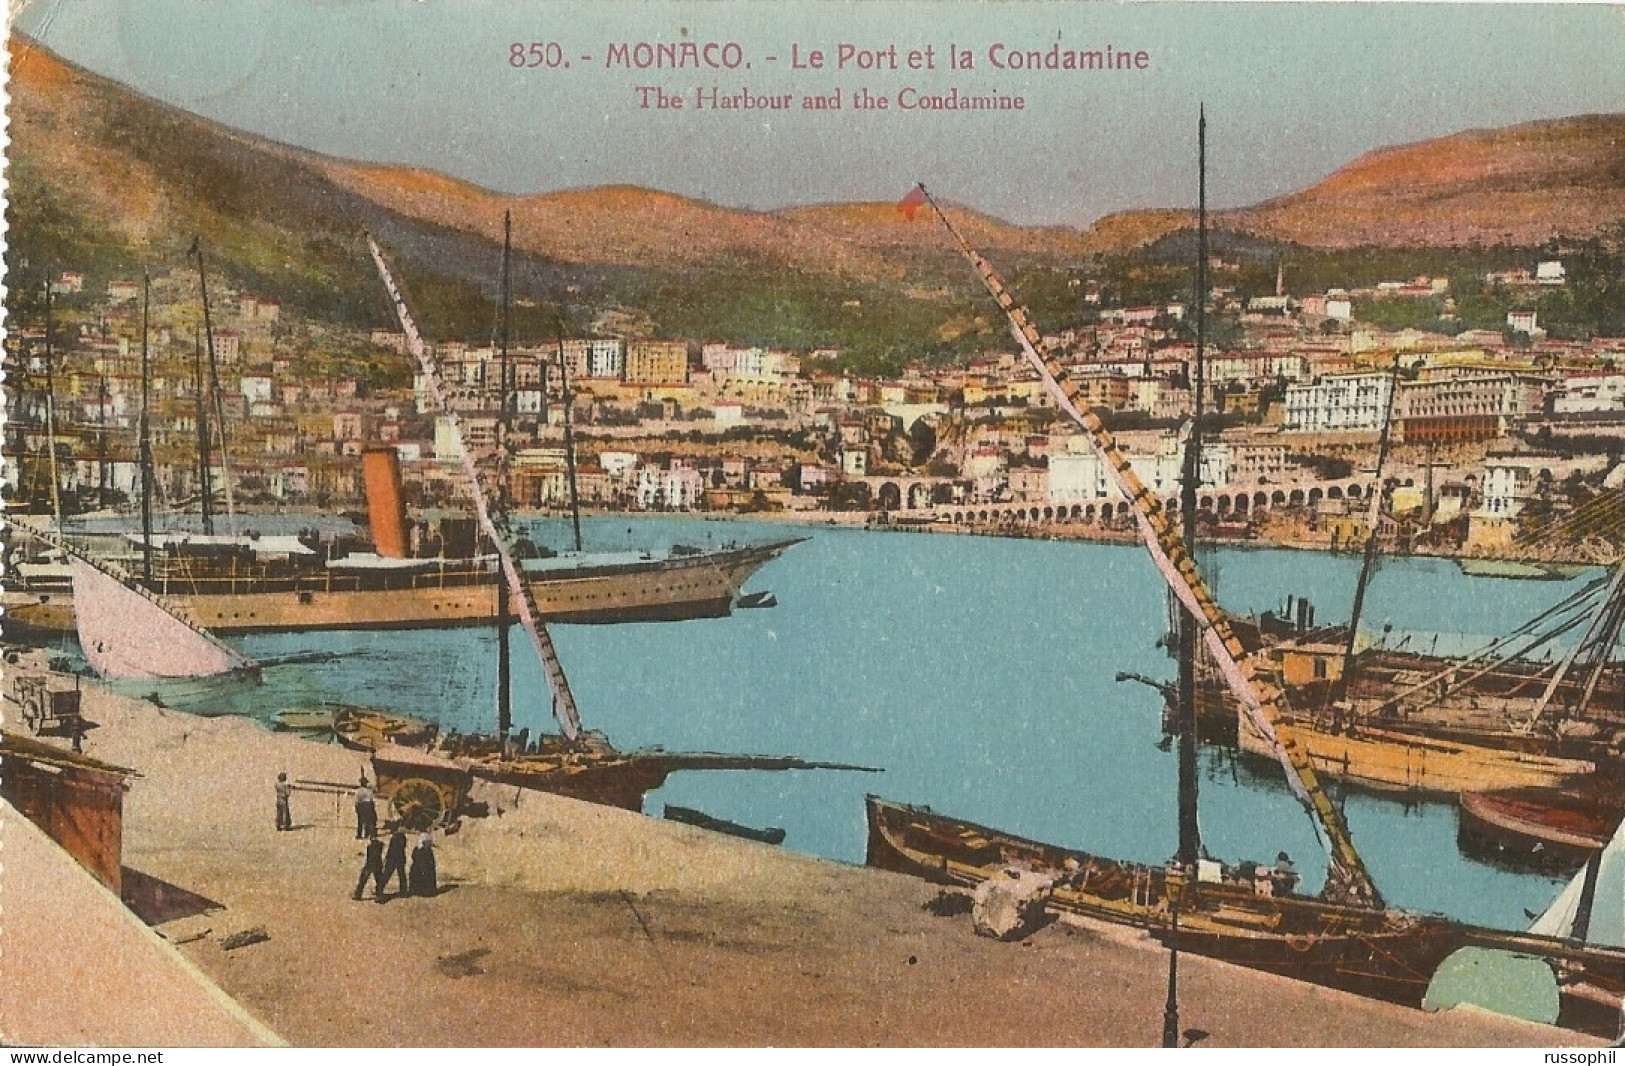 MONACO - LE PORT ET LA CONDAMINE - THE HARBOUR AND THE CONDAMINE - ED. GILETTA REF #850 - 1925 - Porto